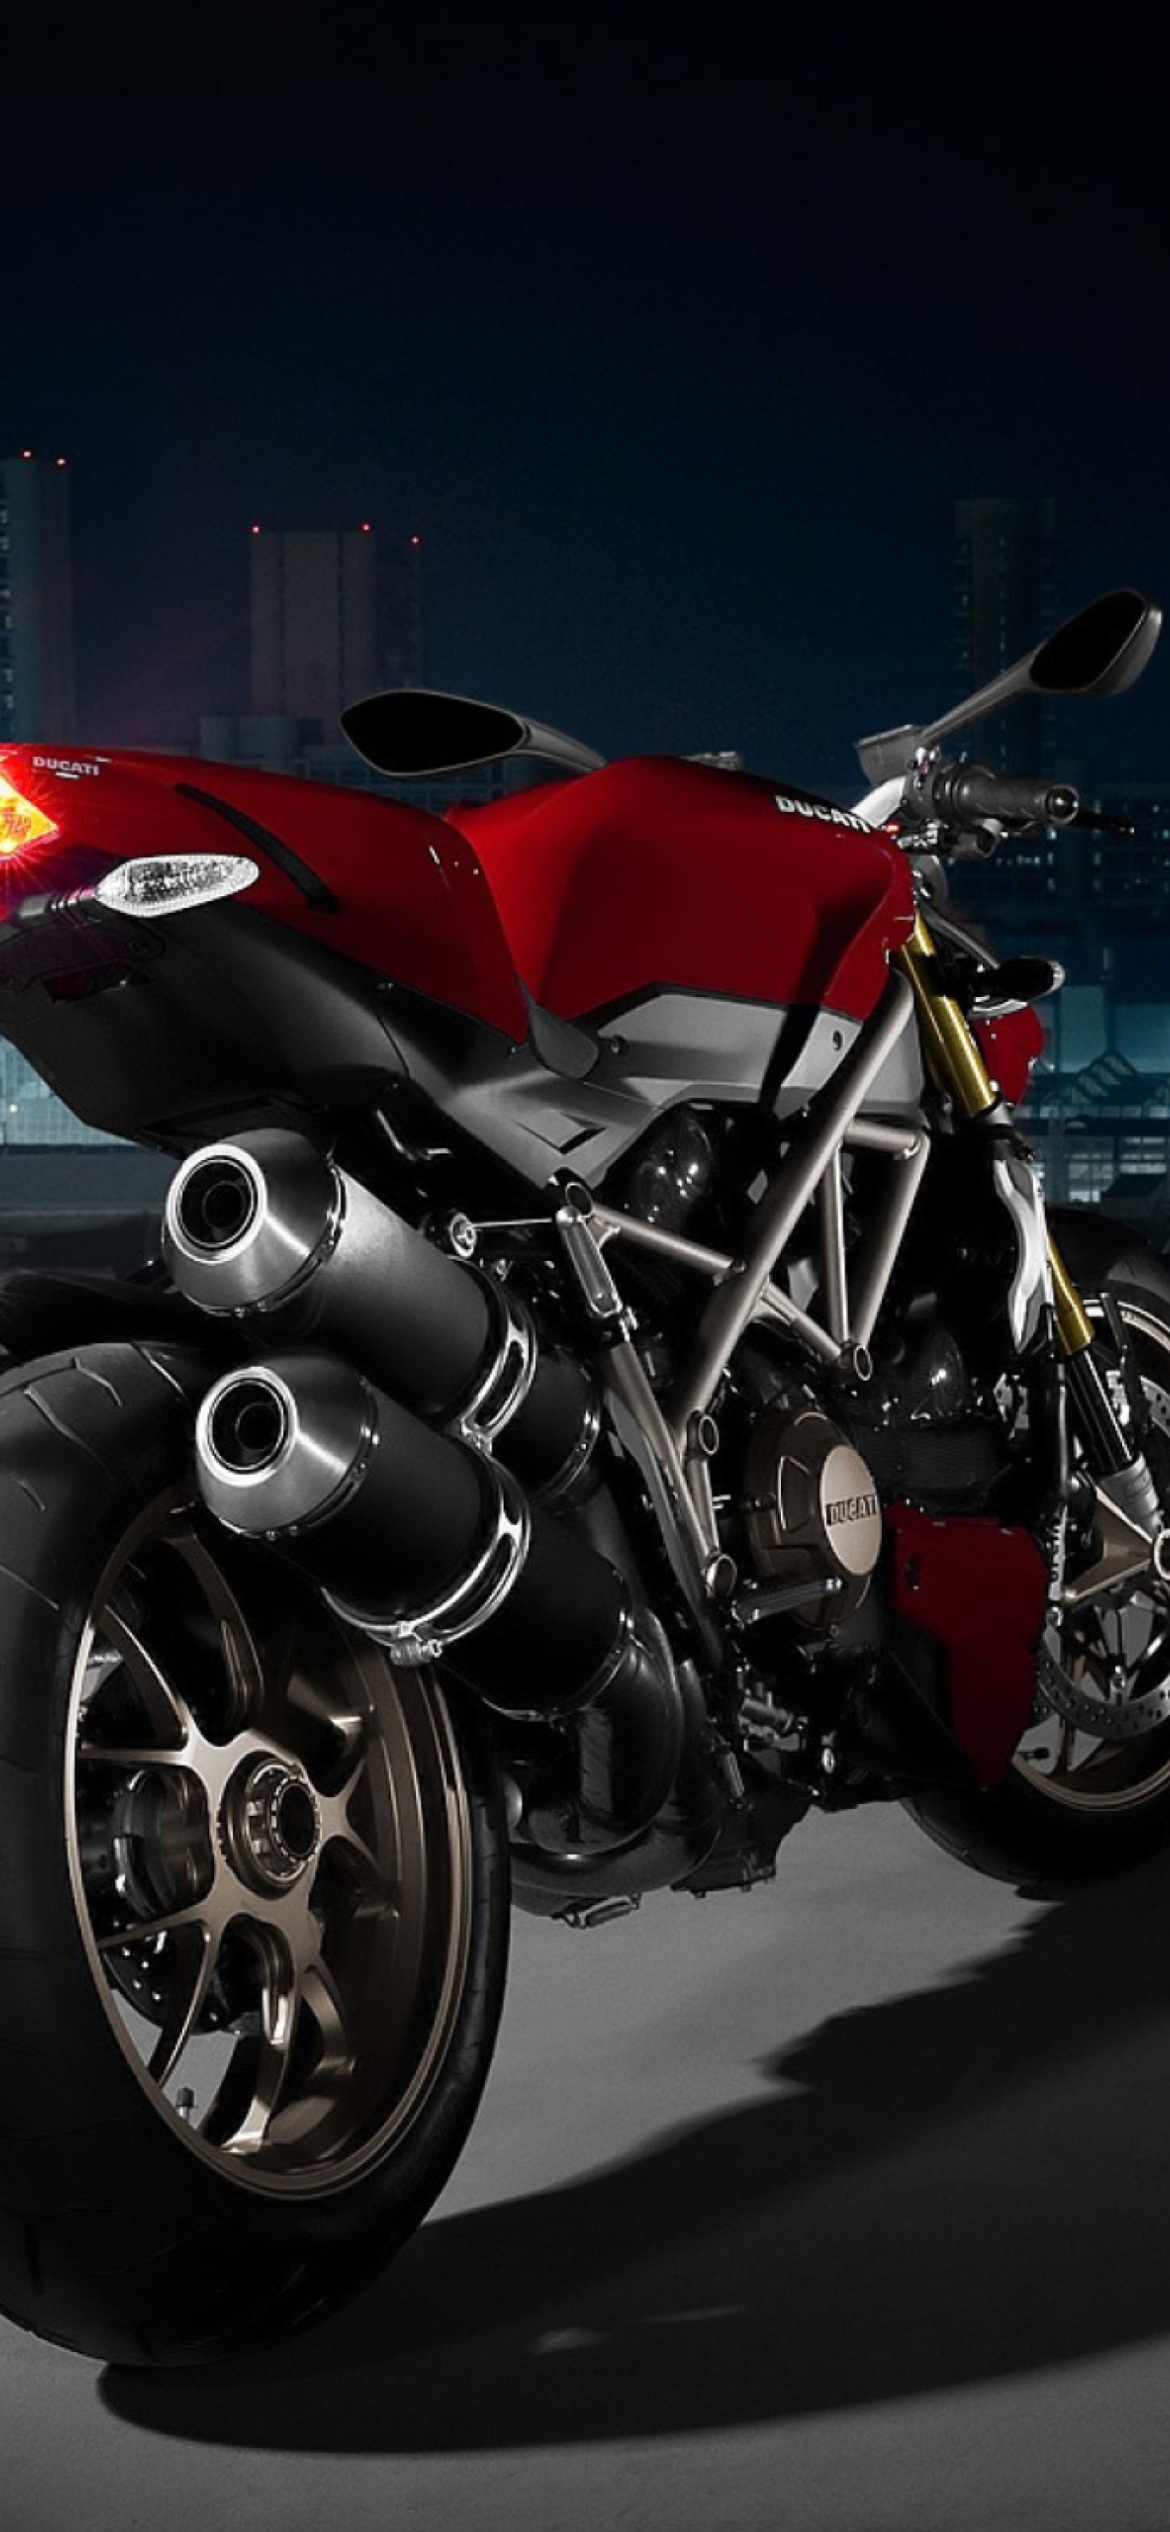 Das Ducati - Delicious Moto Bikes Wallpaper 1170x2532